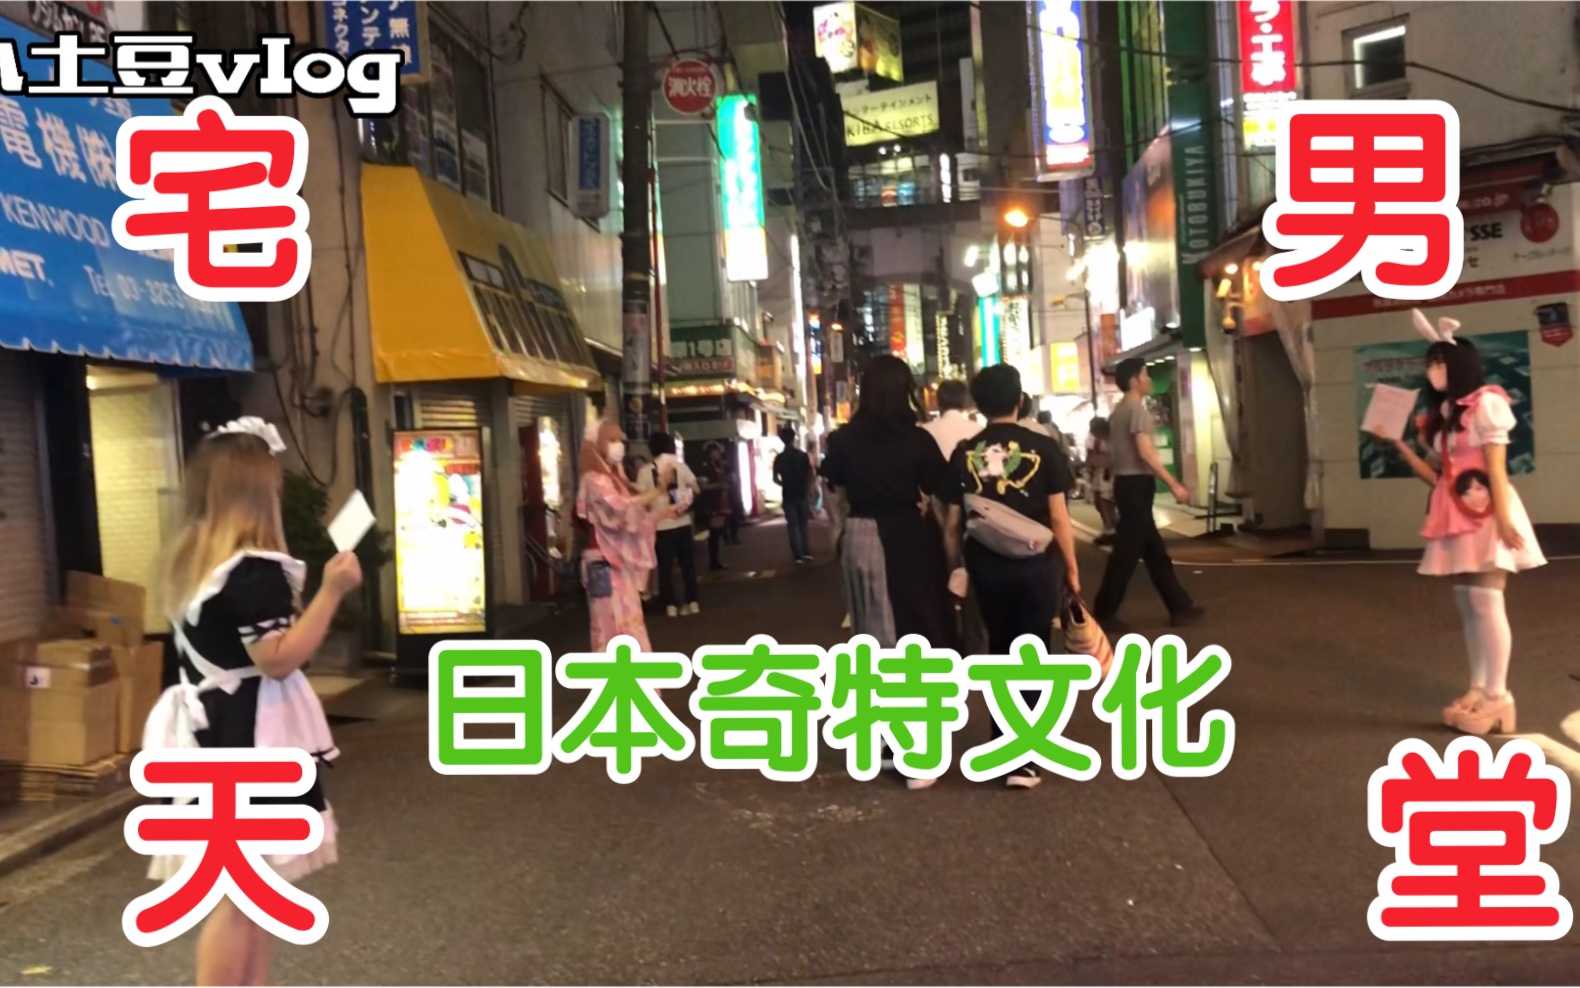 误入日本一条街、全是“超短裙”的日本妹子在揽客、规模太大了吧